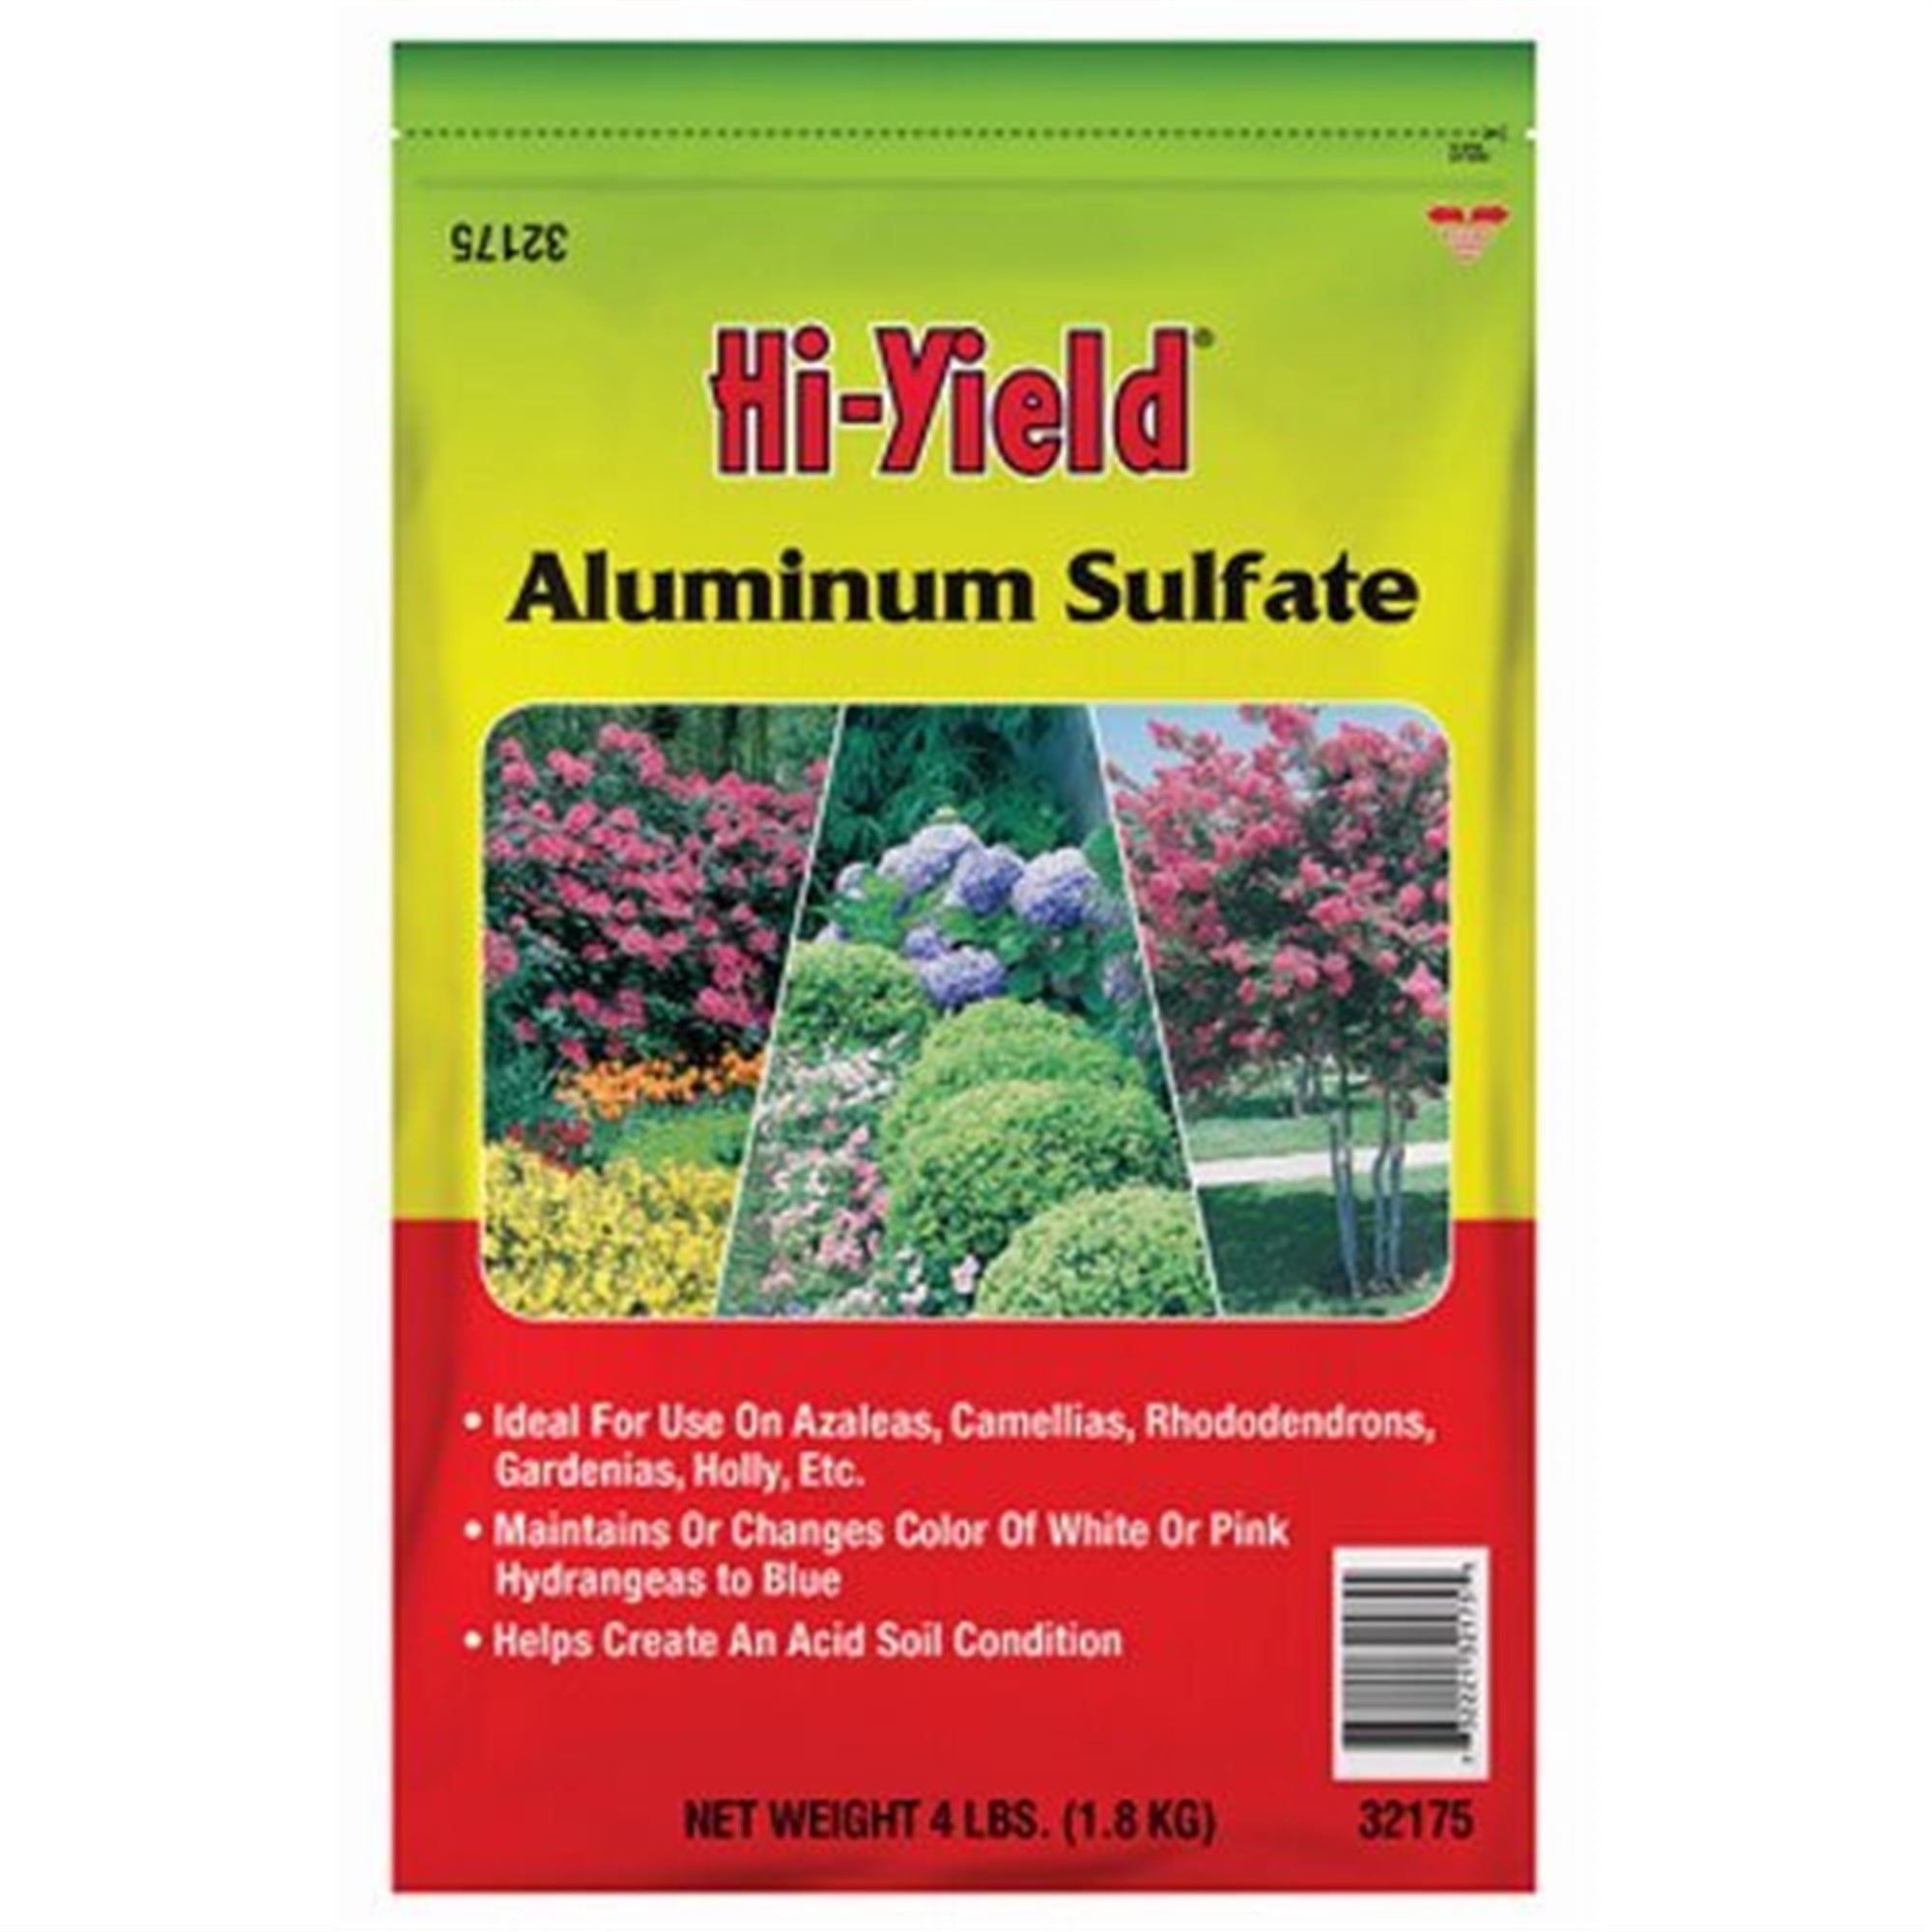 VPG Hi-Yield Aluminum Sulfate Soil Conditioner to Create Acidic Conditions